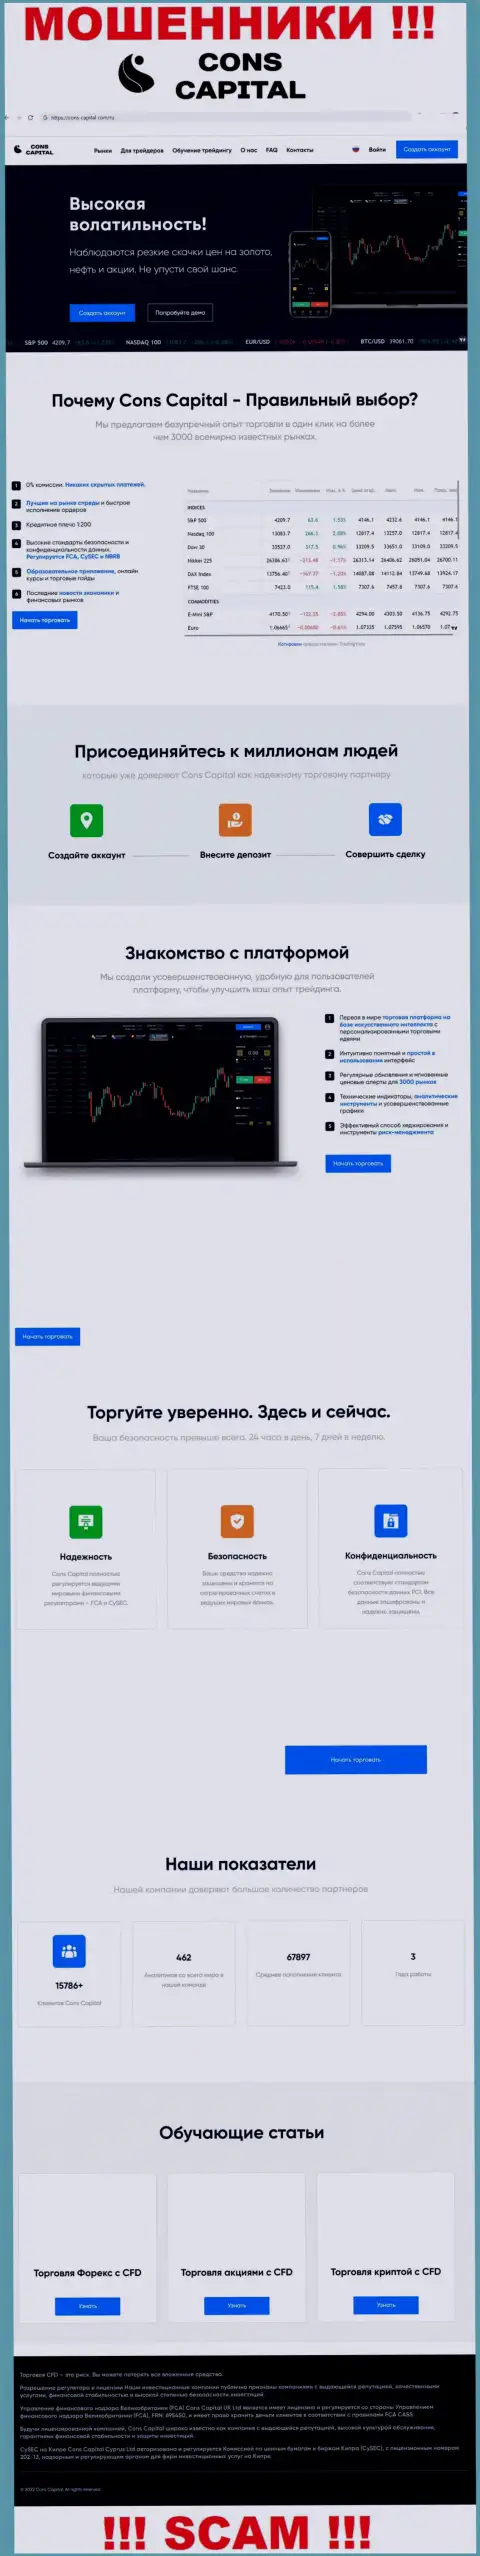 Веб-портал мошенников Конс-Капитал Ком - это стопудовый грабеж своих клиентов